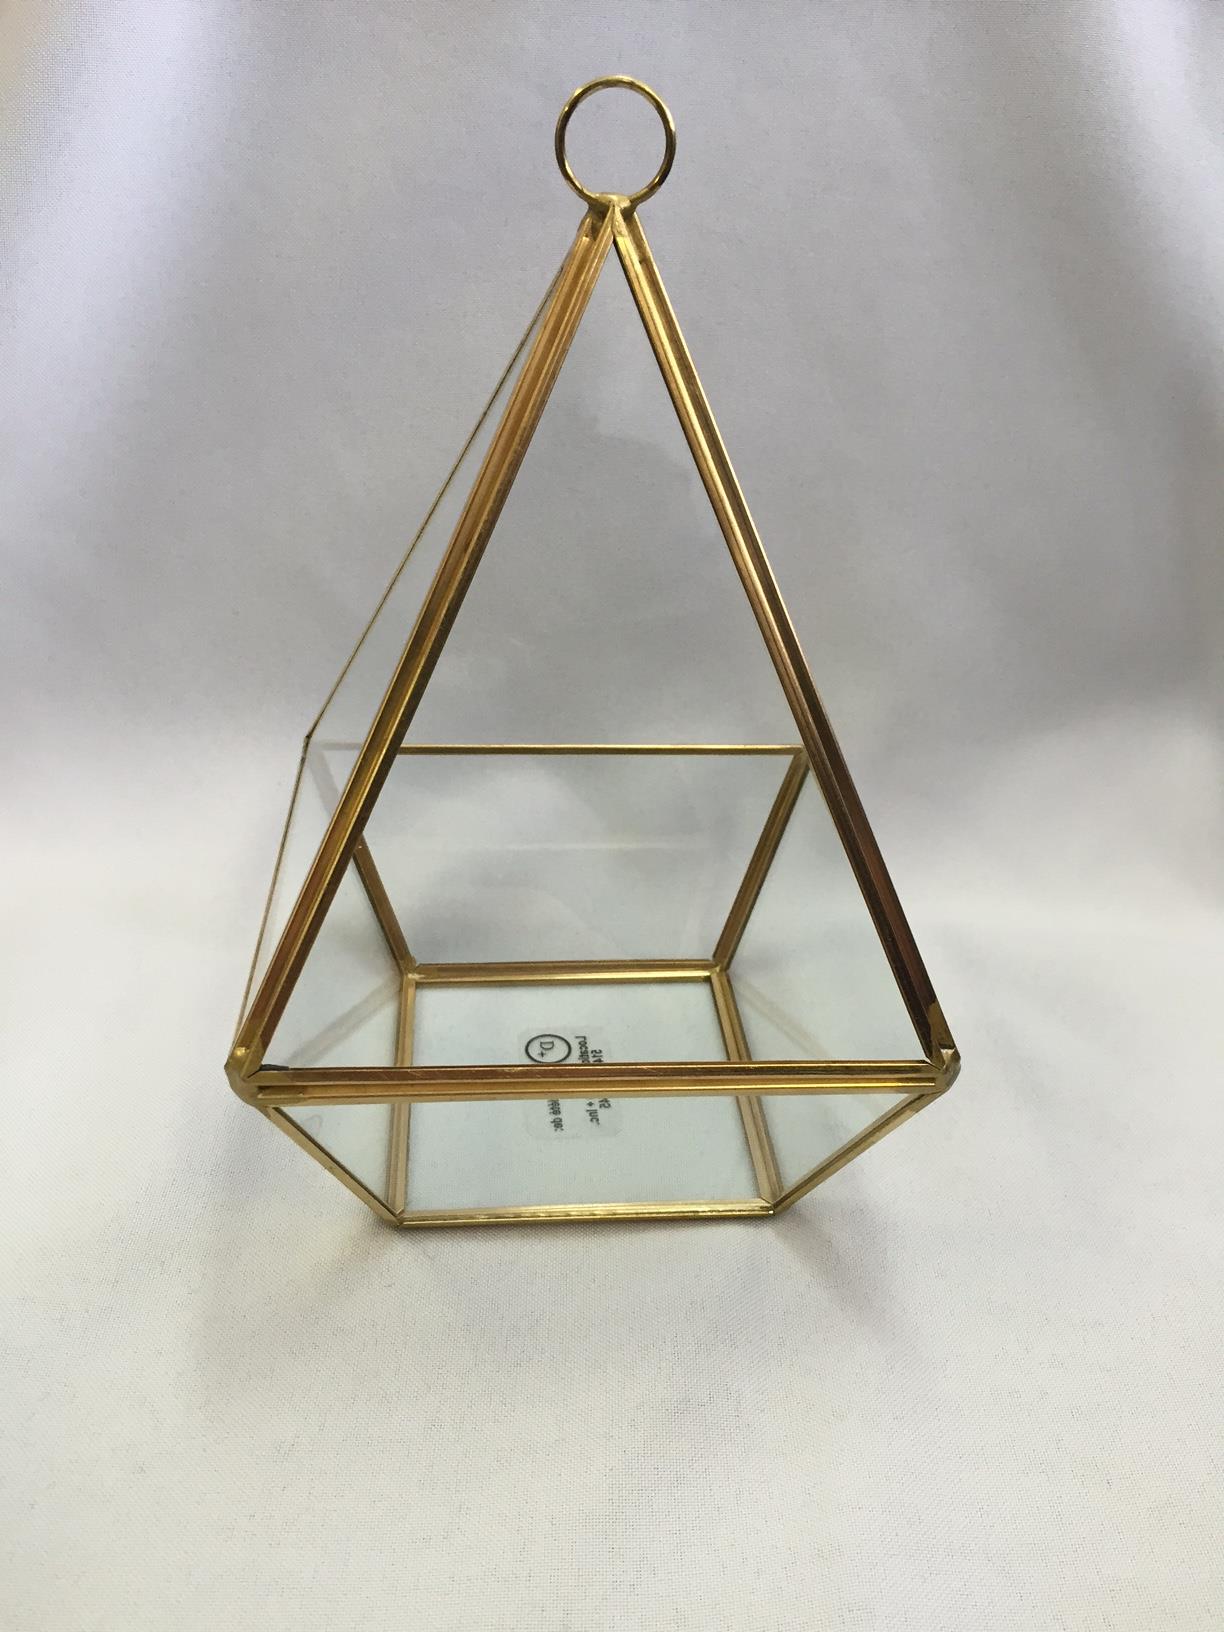 Vase-gy-omy-trique-Pyramide-Dory-.jpeg